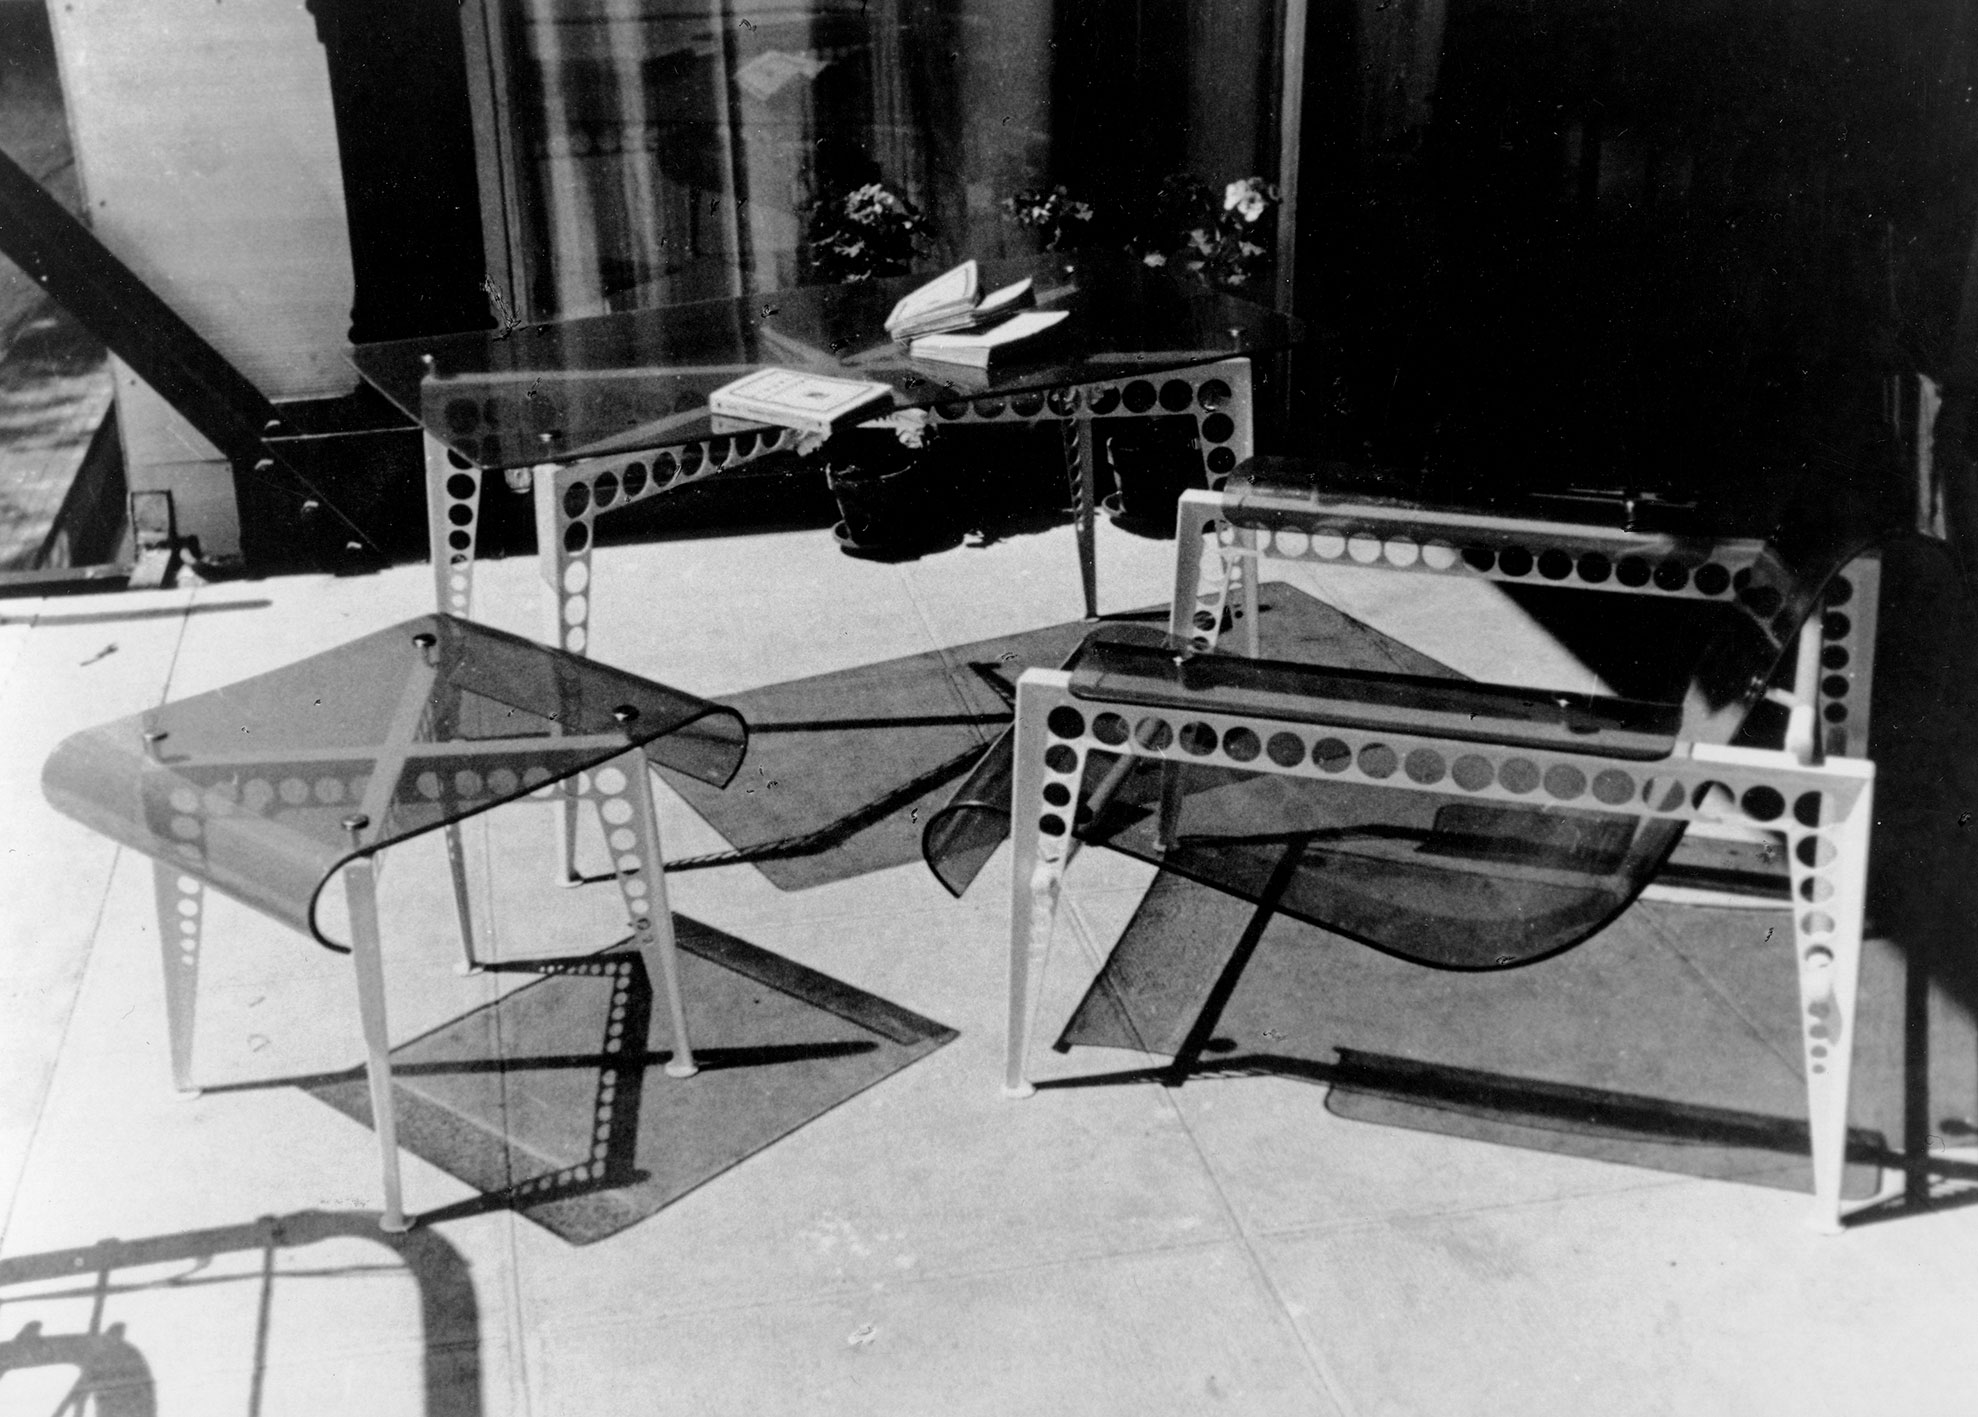 Fauteuil de jardin, tabouret et table basse, 1937 avec Jacques André. Présentation : Union des artistes modernes Exposition internationale, Paris, 1937.